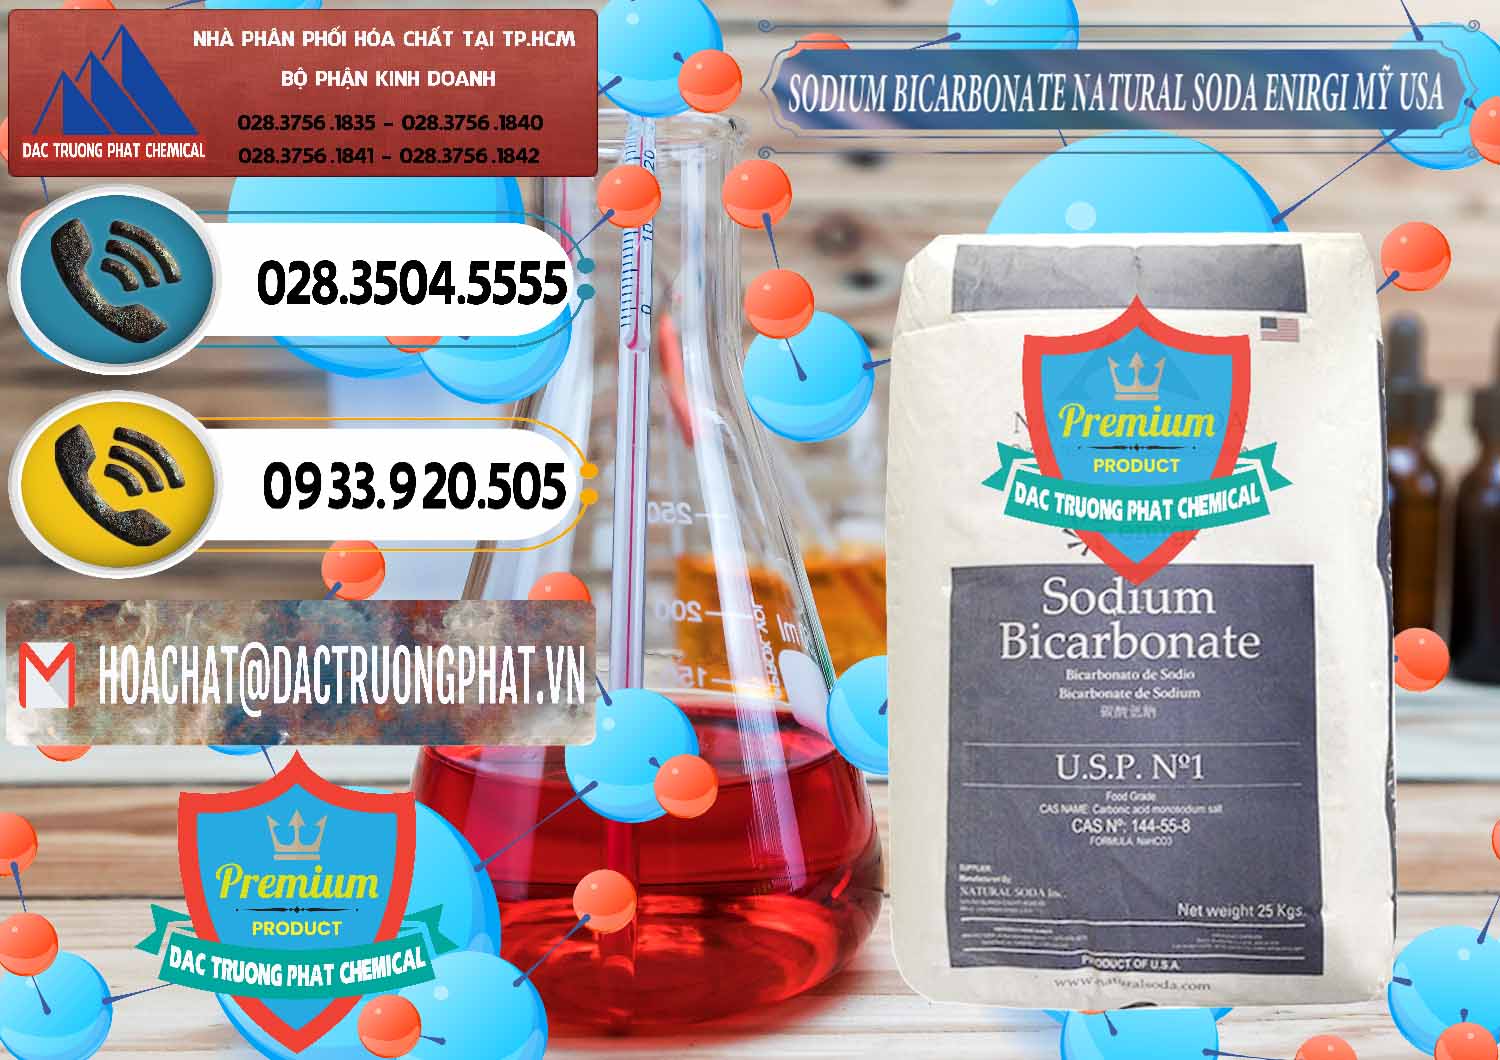 Đơn vị chuyên bán và cung ứng Sodium Bicarbonate – Bicar NaHCO3 Food Grade Natural Soda Enirgi Mỹ USA - 0257 - Cty chuyên cung ứng và phân phối hóa chất tại TP.HCM - hoachatdetnhuom.vn